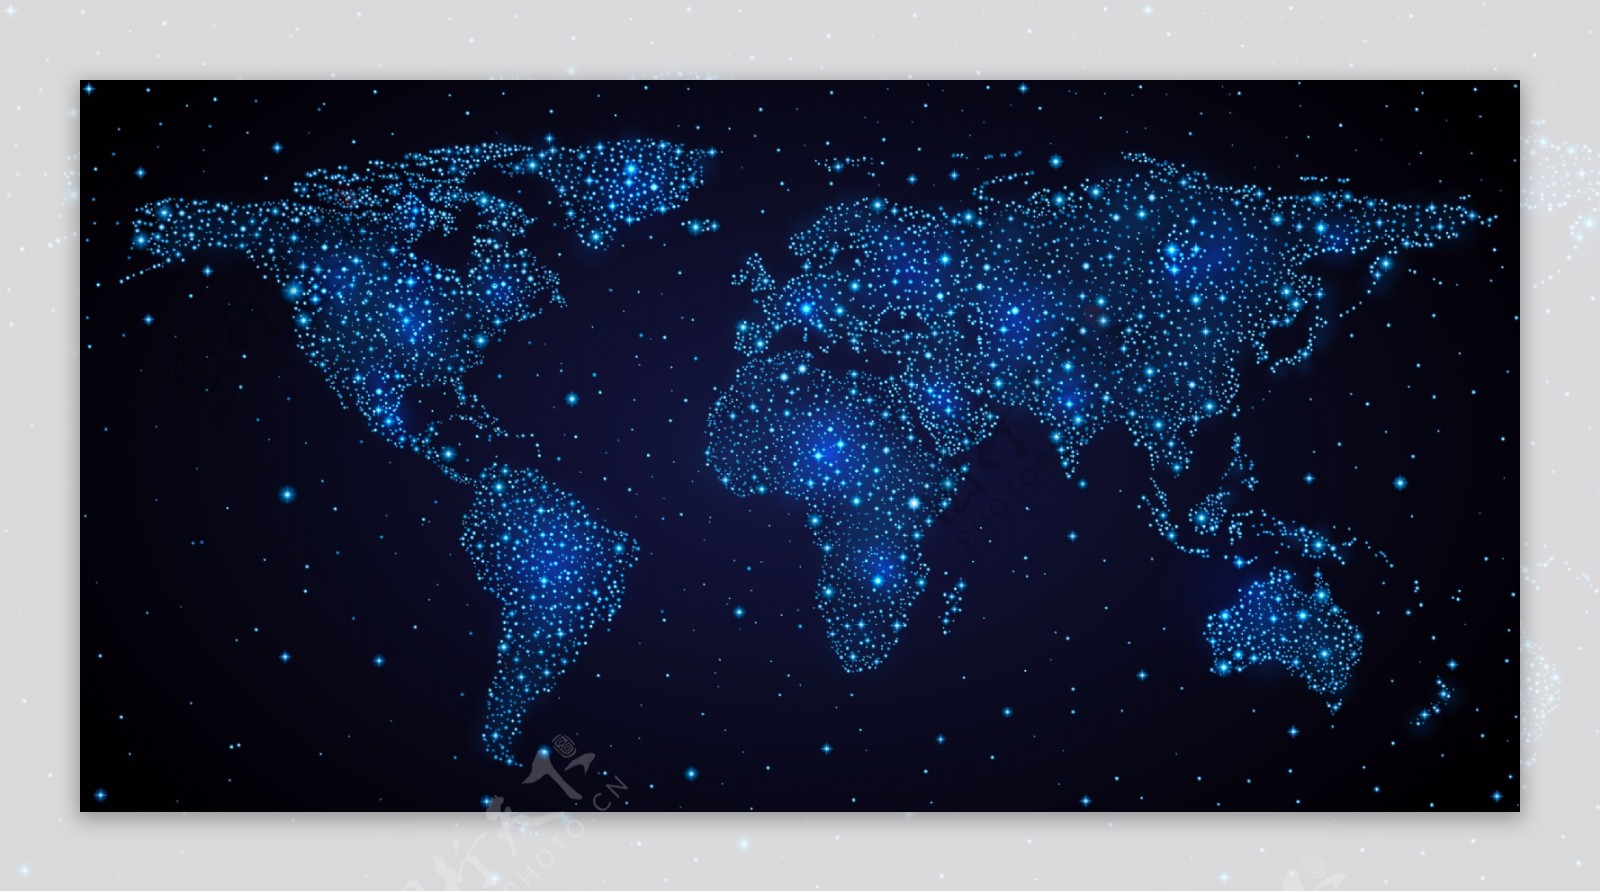 一组蓝色系世界地图